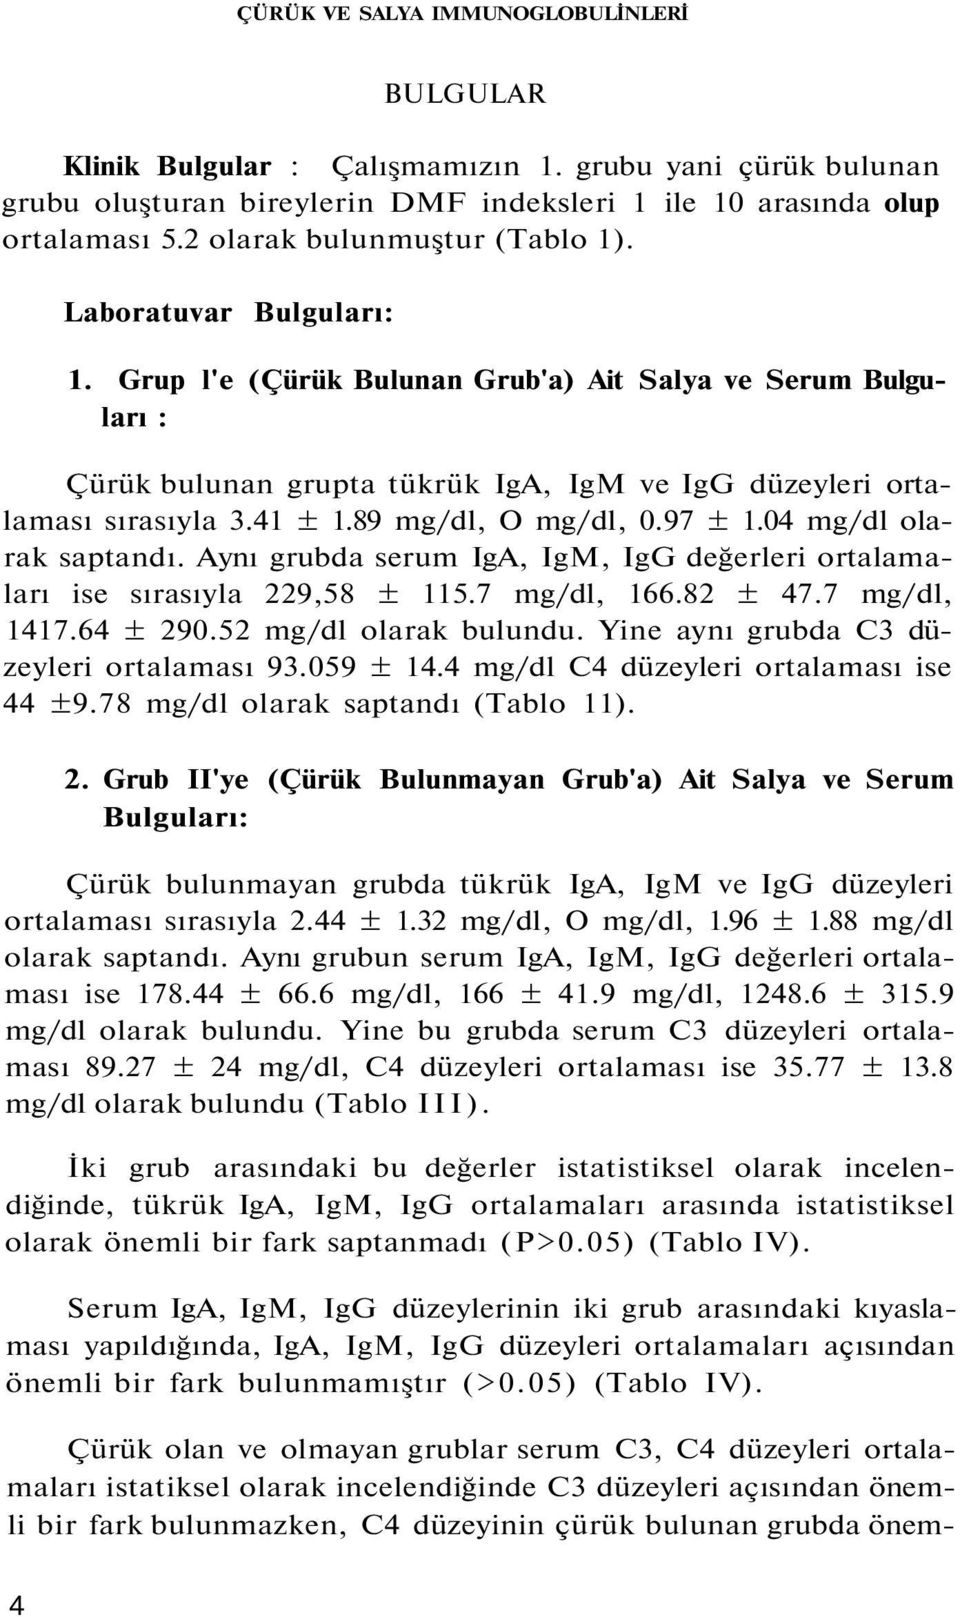 41 ± 1.89 mg/dl, O mg/dl, 0.97 ± 1.04 mg/dl olarak saptandı. Aynı grubda serum IgA, IgM, IgG değerleri ortalamaları ise sırasıyla 229,58 ± 115.7 mg/dl, 166.82 ± 47.7 mg/dl, 1417.64 ± 290.